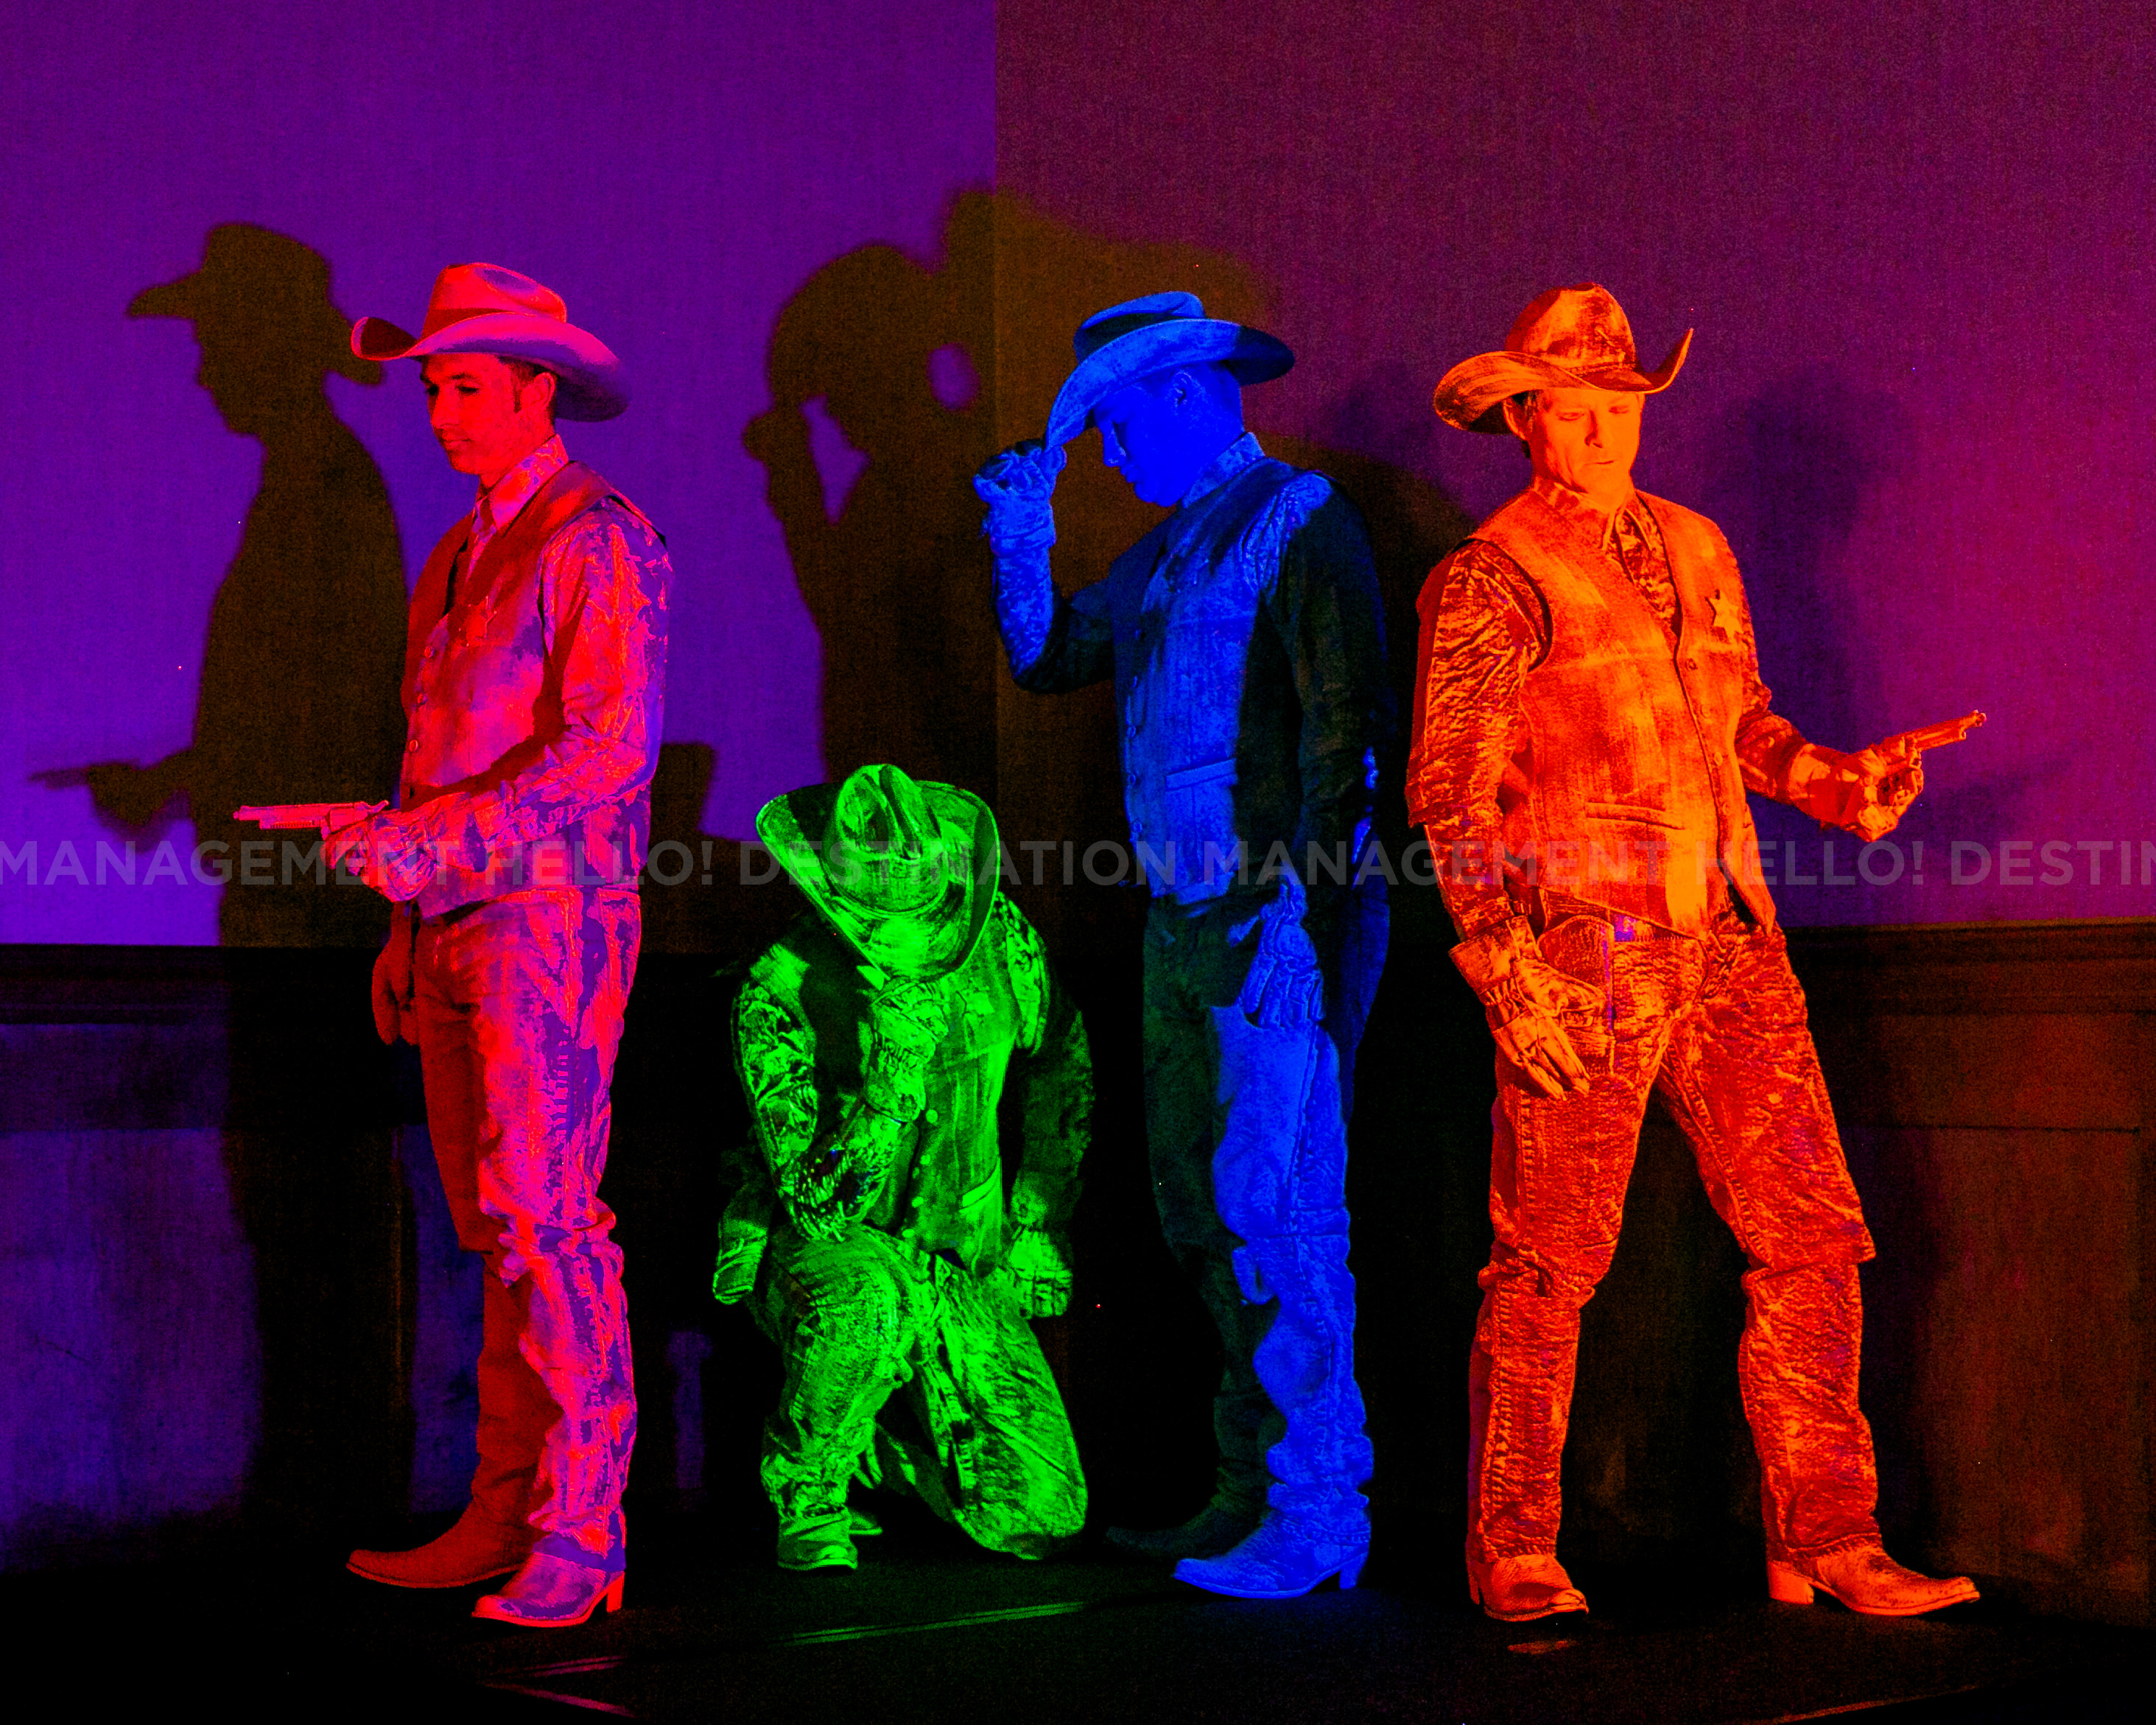 Cowboy Pop Neon Cowboys Hello! Destination Management